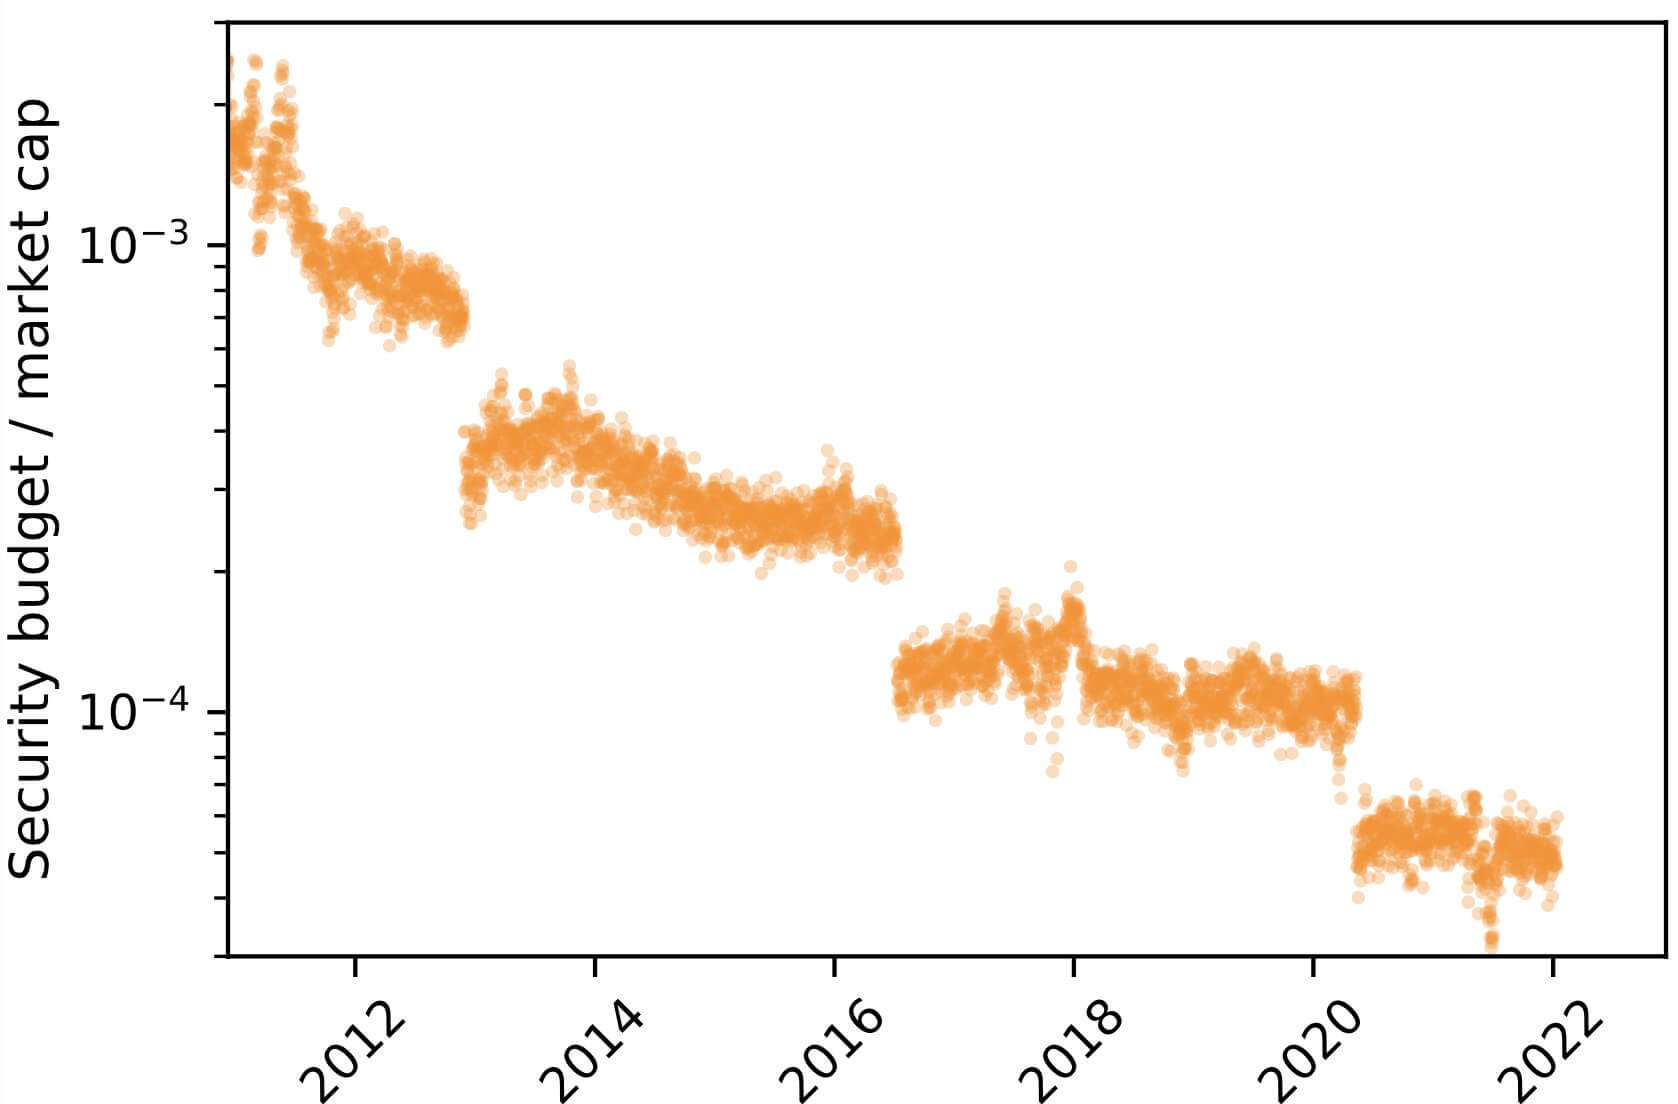 Anggaran keamanan Bitcoin relatif terhadap kapitalisasi pasar (CoinMetrics)